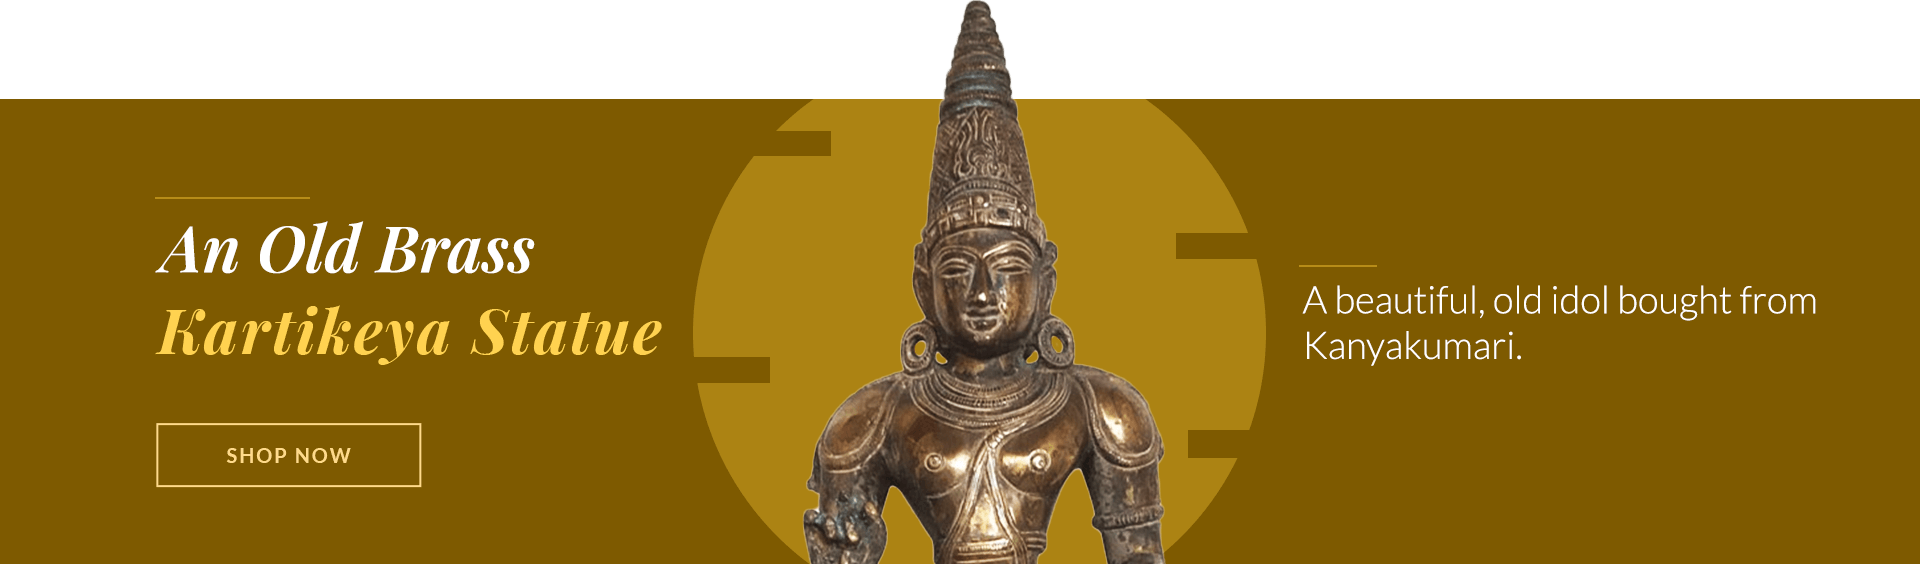 An Old Brass Kartikeya Statue